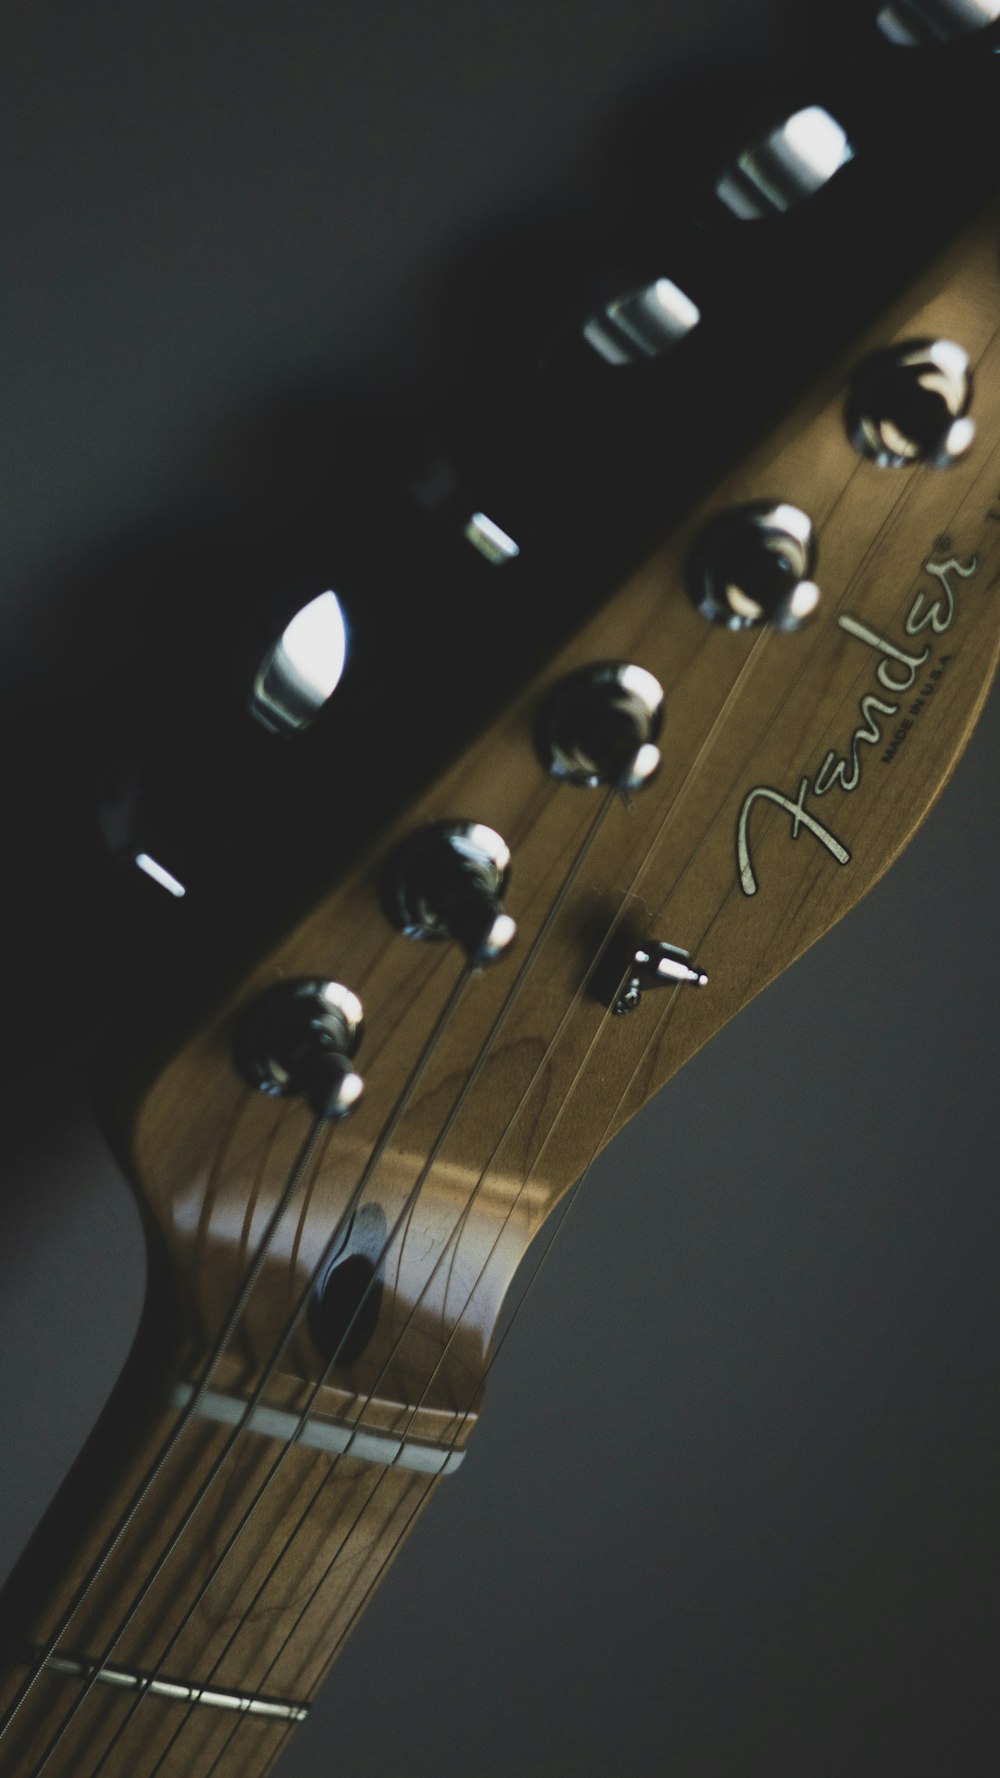 Fender Guitar Pictures Download Free Images On Unsplash